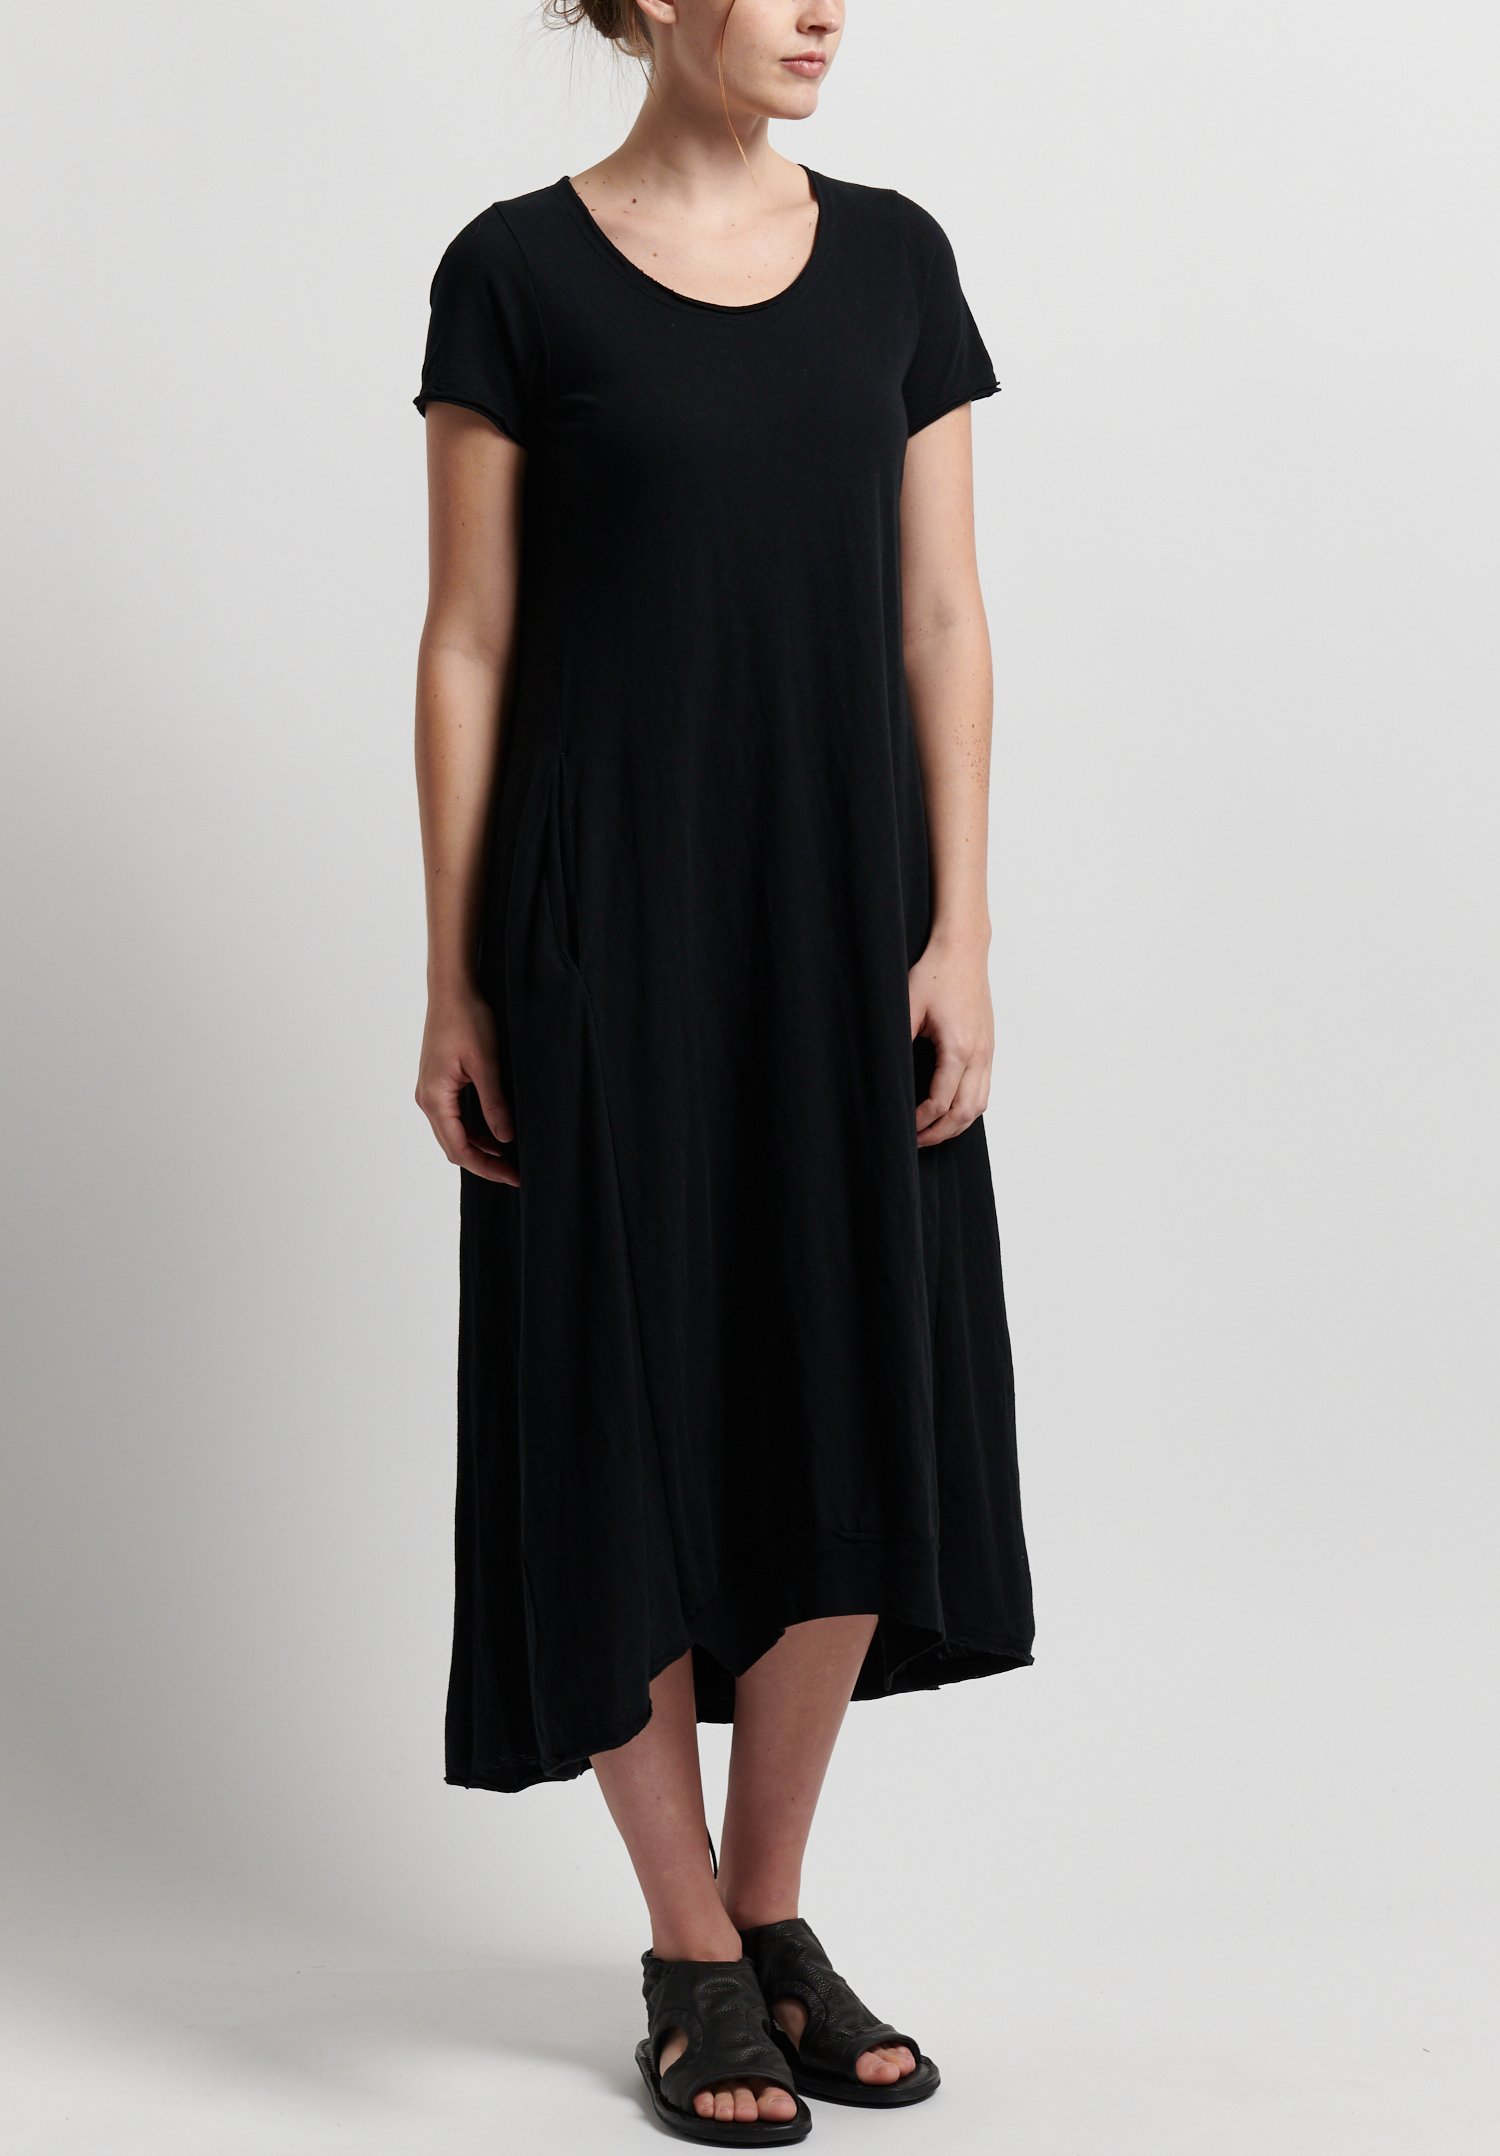 Rundholz Black Label A-Line Dress in Black | Santa Fe Dry Goods ...